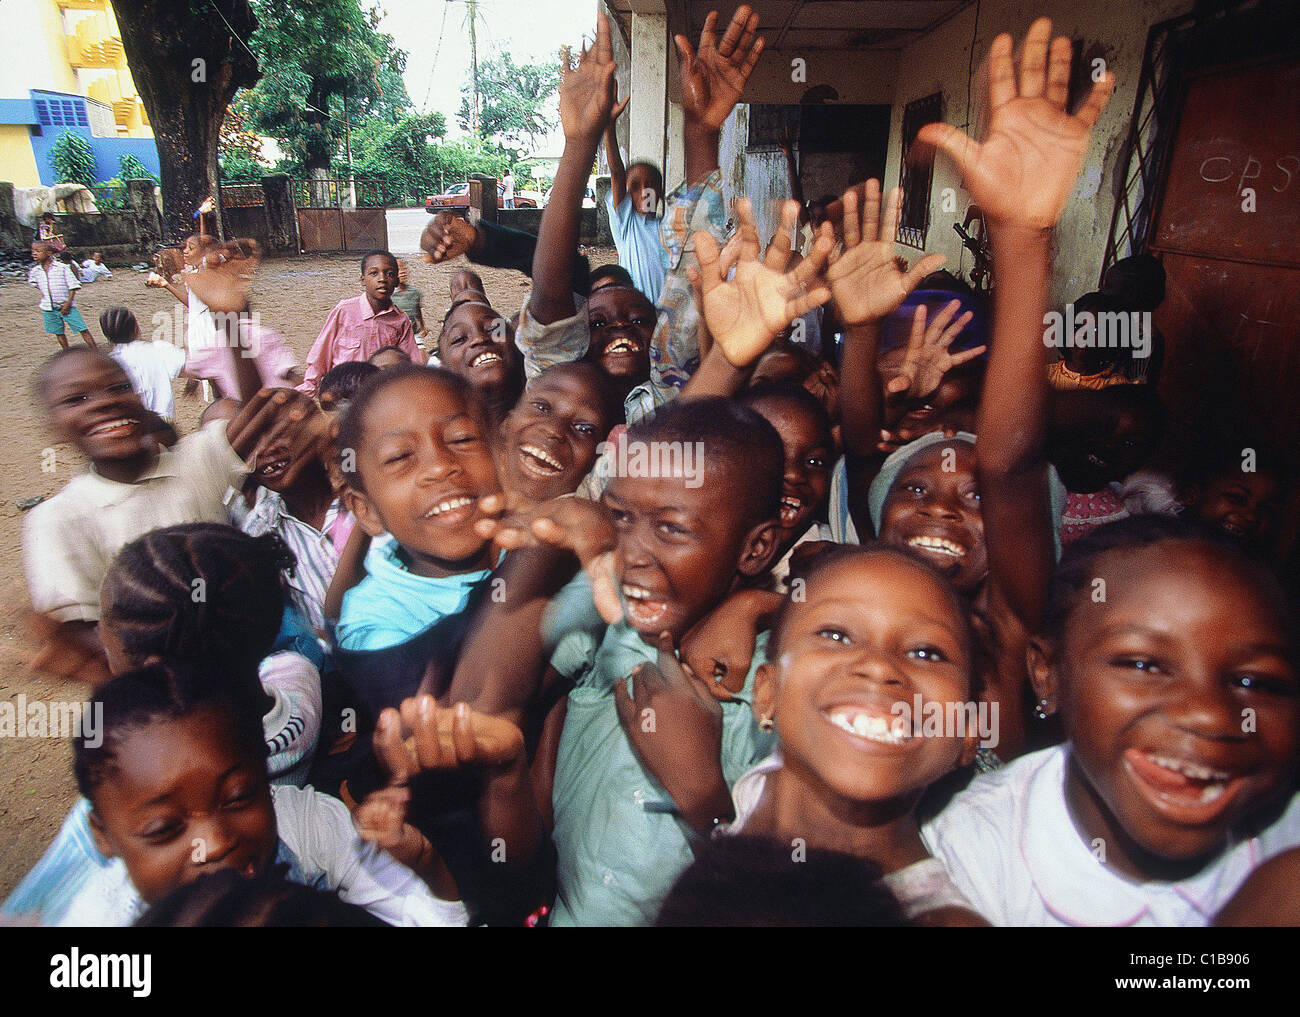 Cameroon, Douala city, schoolboys Stock Photo